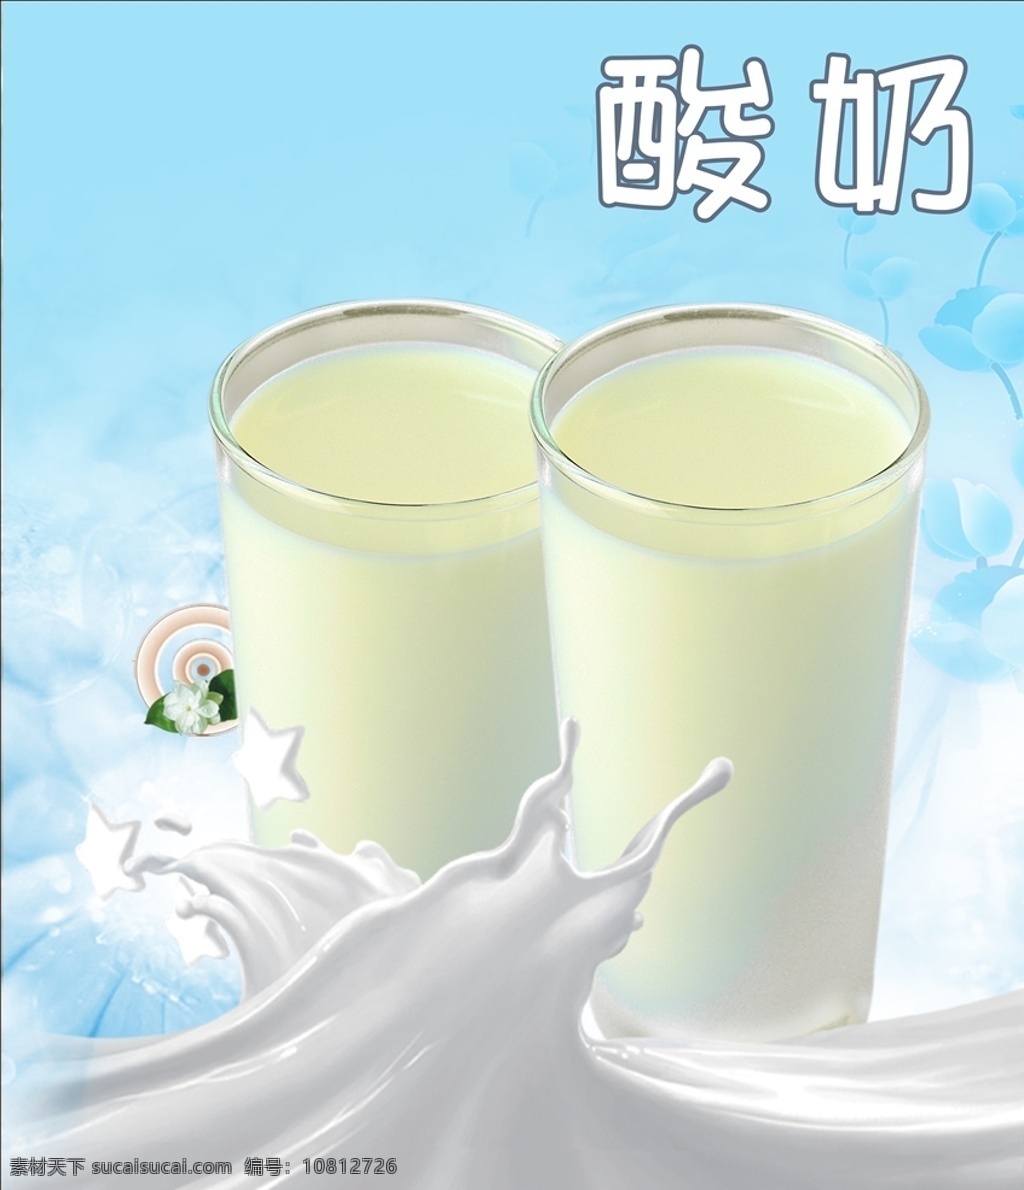 手工酸奶 正宗酸奶 酸奶饮料 酸奶配送 发酵酸奶 有机酸奶 海报 展板 酸奶 炒酸奶 招贴设计